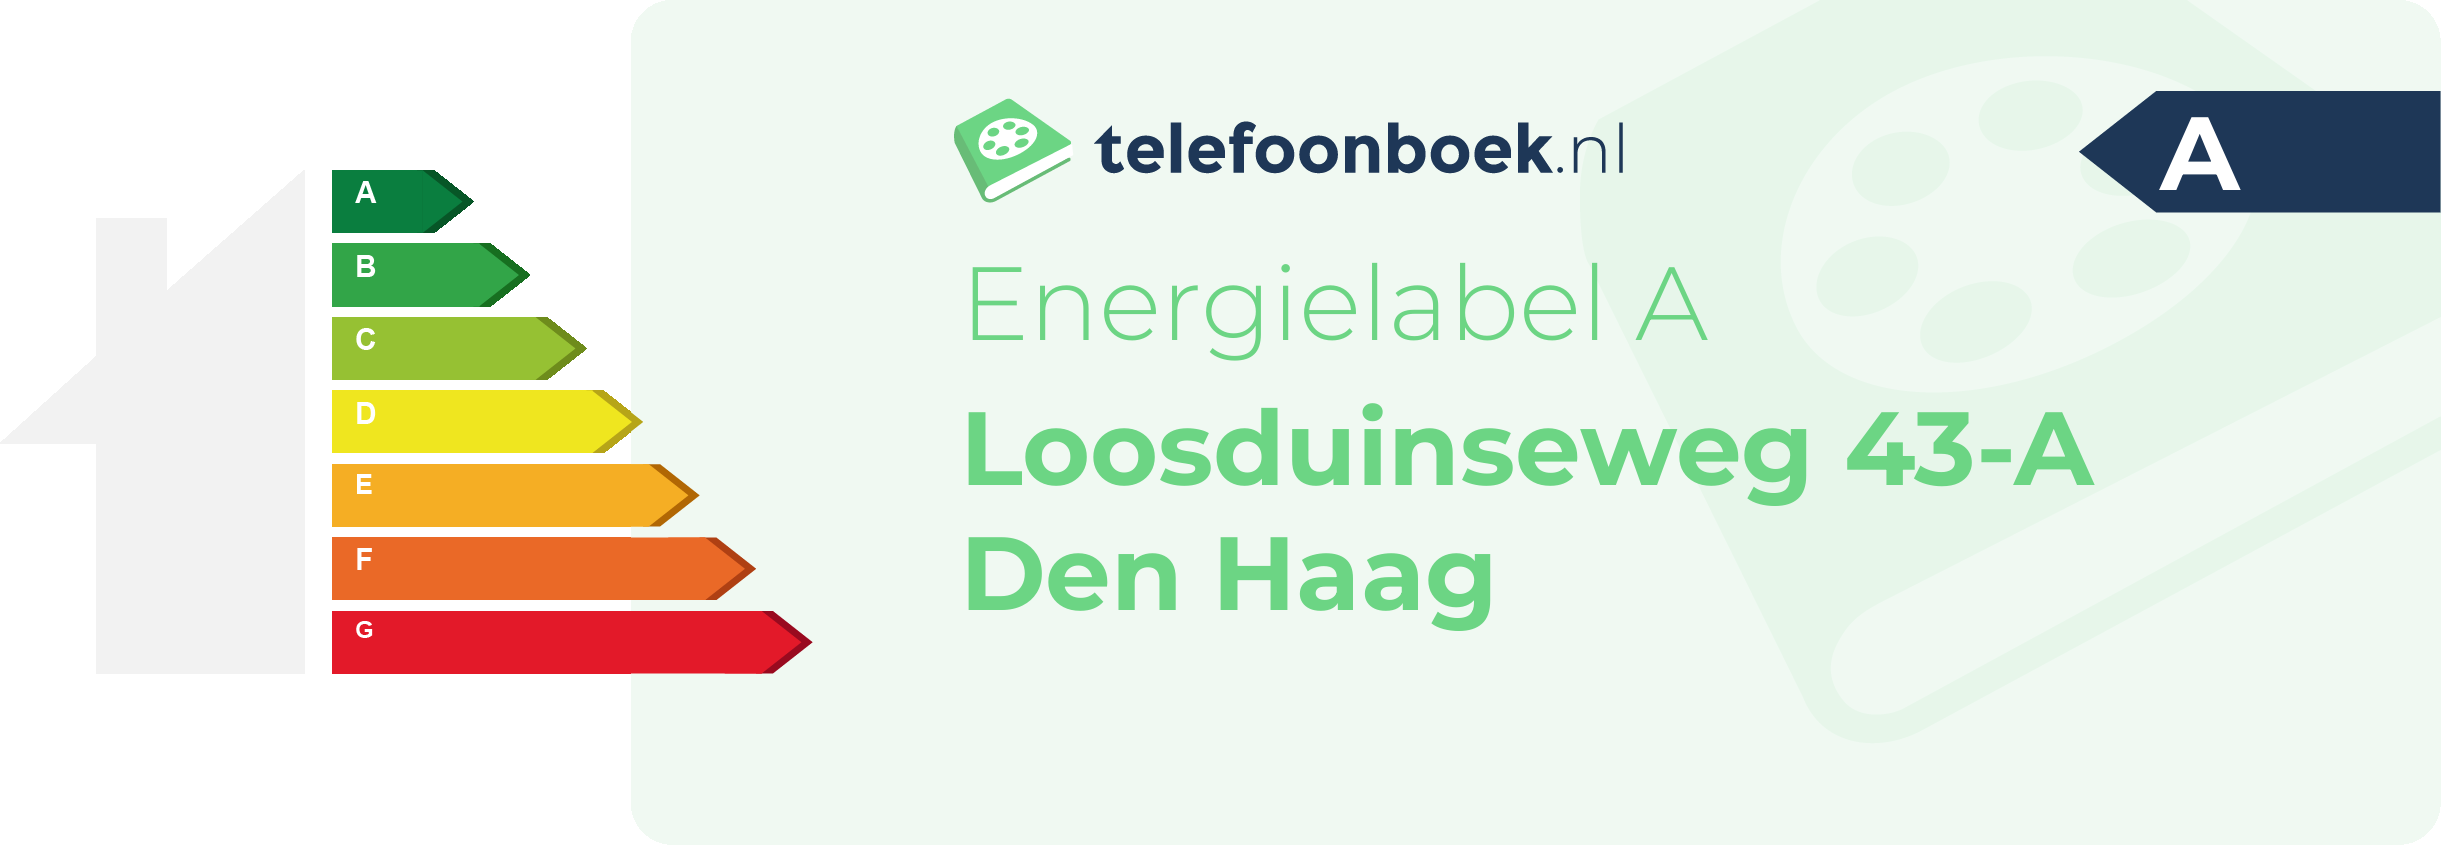 Energielabel Loosduinseweg 43-A Den Haag